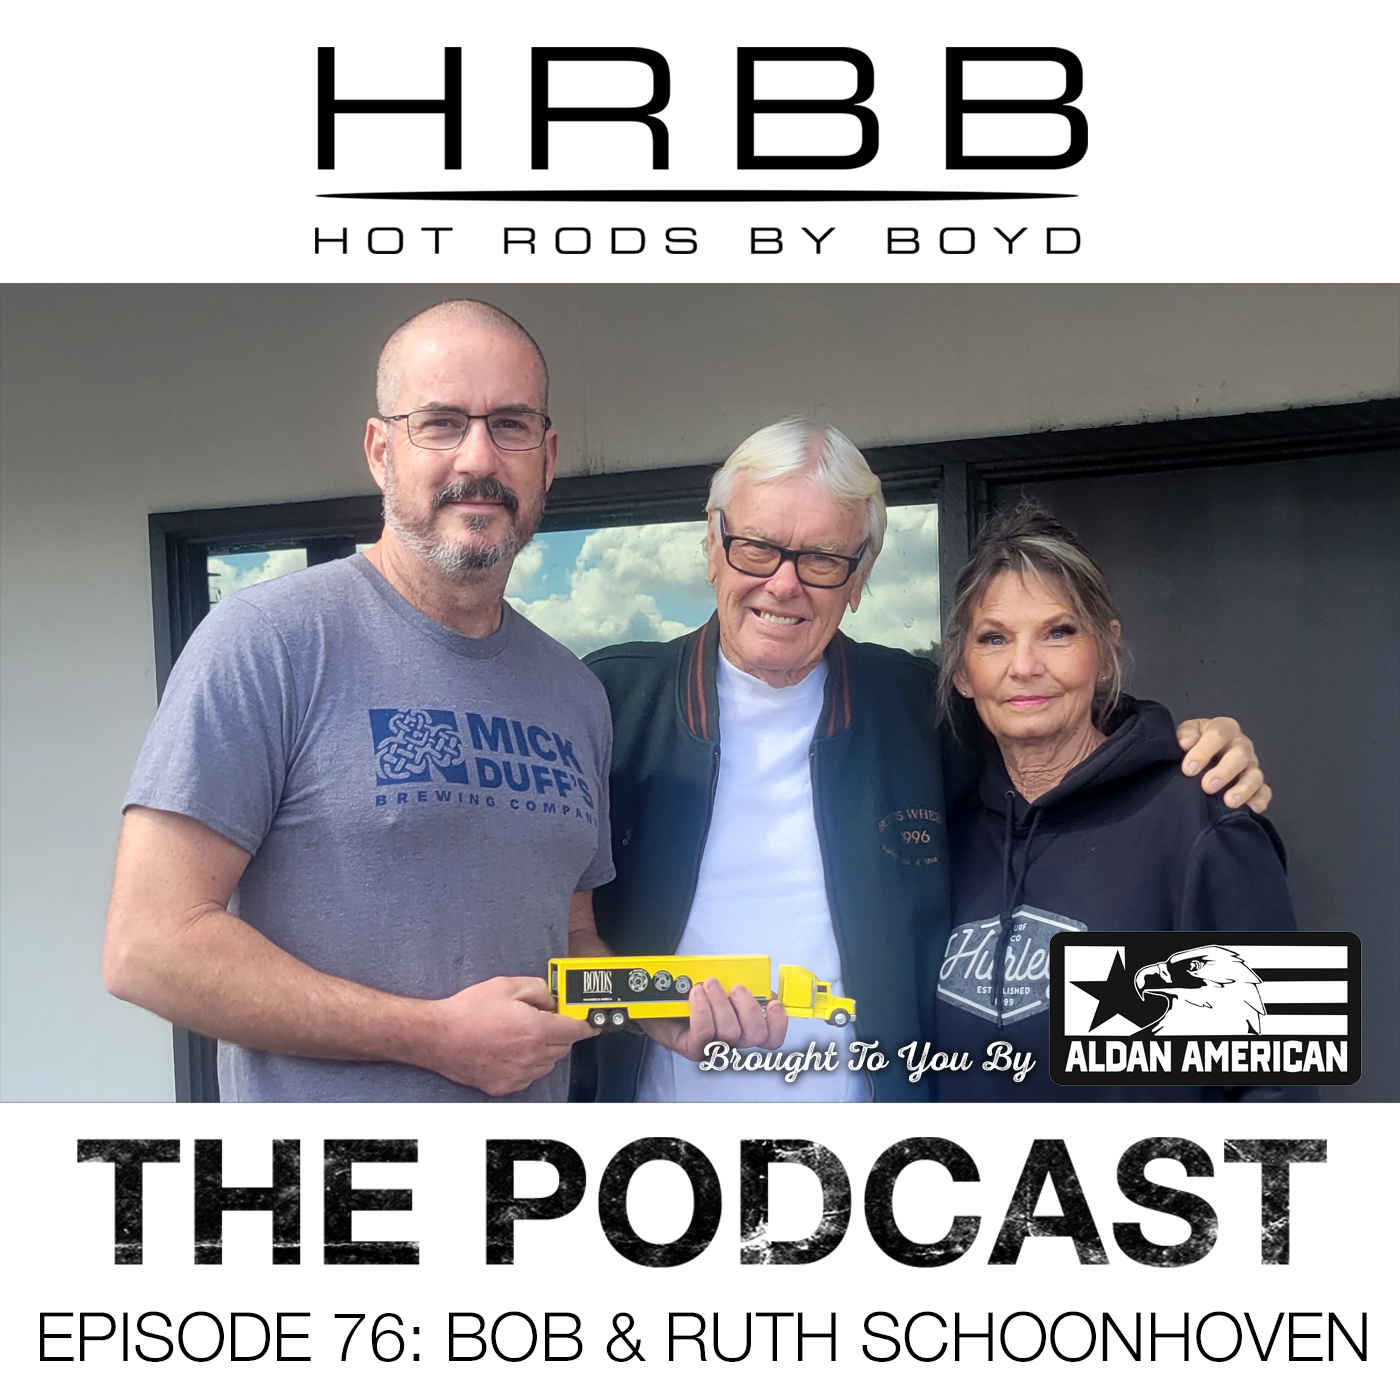 HRBB Episode 76 - Bob & Ruth Schoonhoven